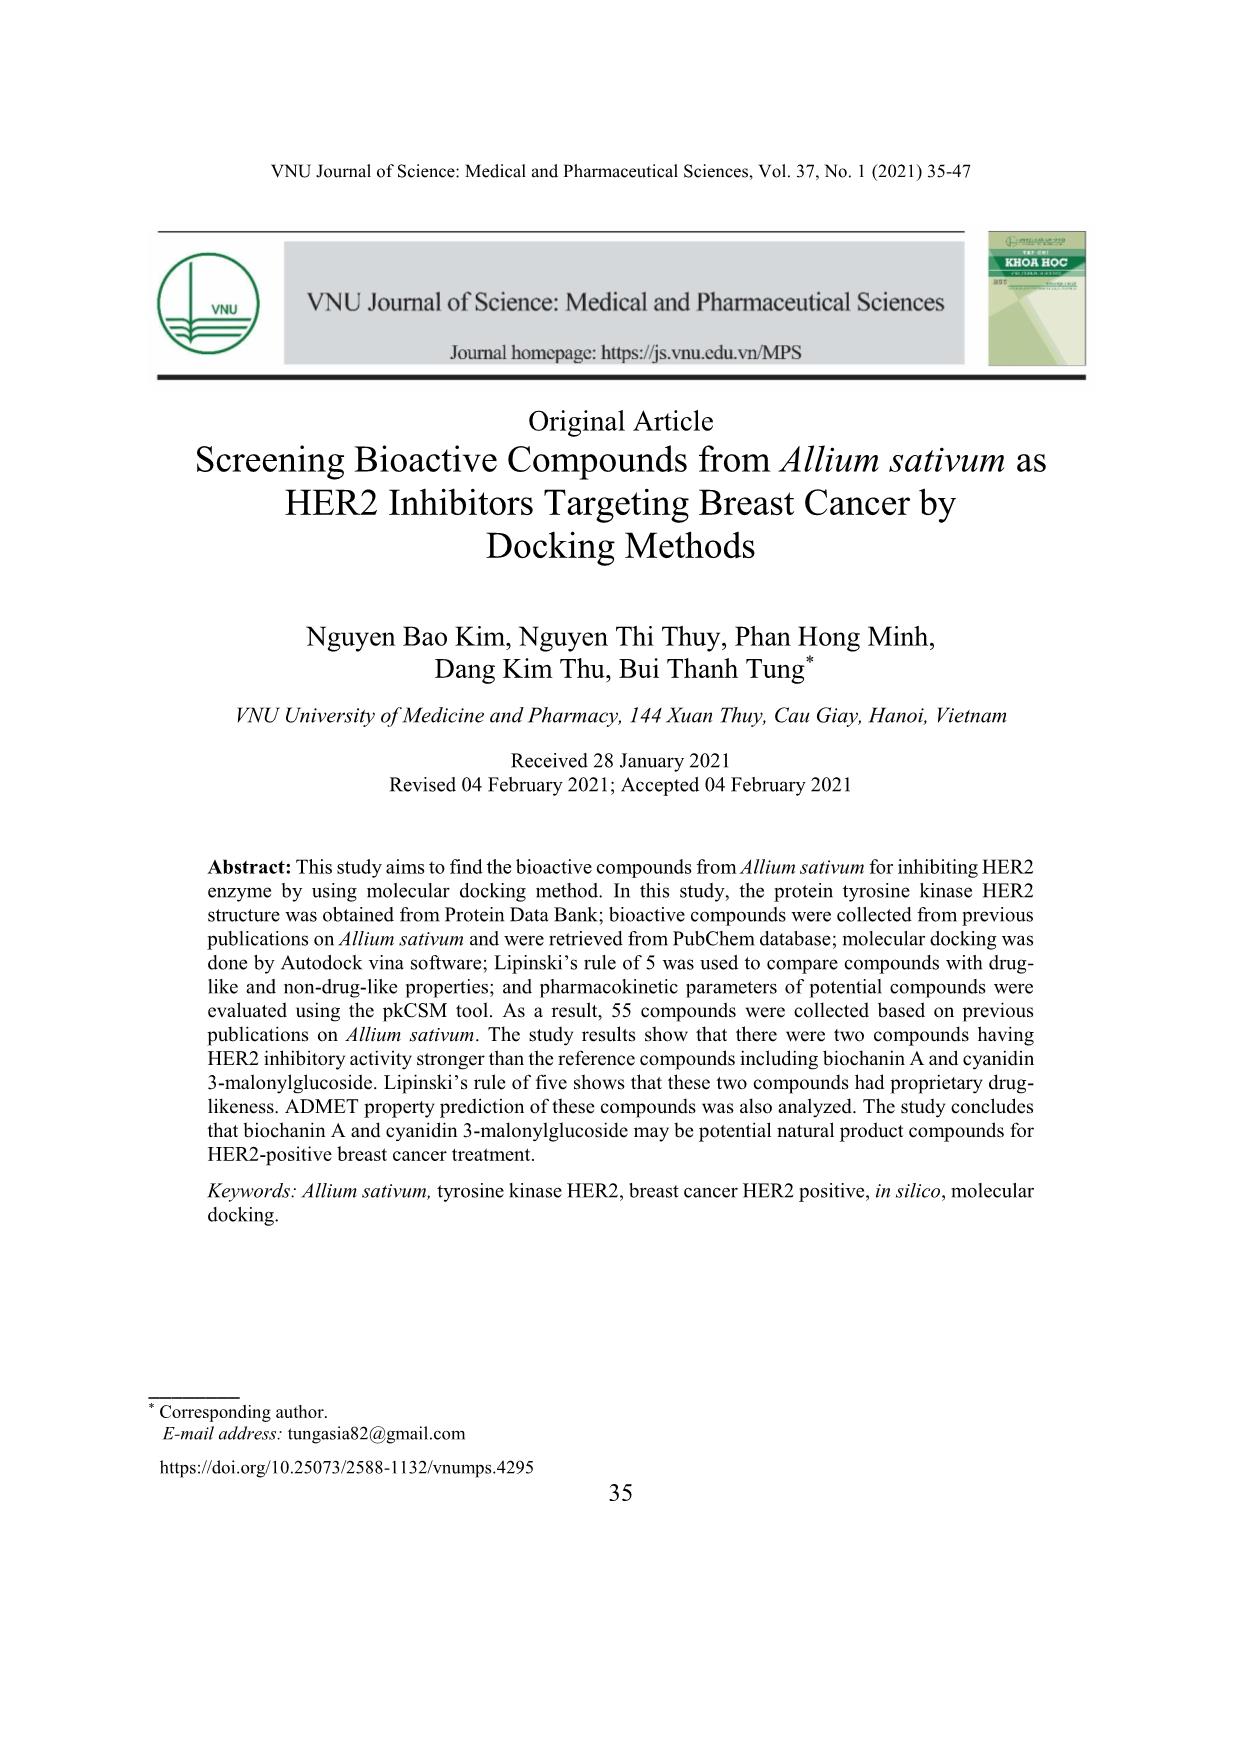 Sàng lọc các hợp chất ức chế thụ thể HER2 trong cây tỏi (Allium sativum) nhằm điều trị ung thư vú bằng phương pháp docking phân tử trang 1